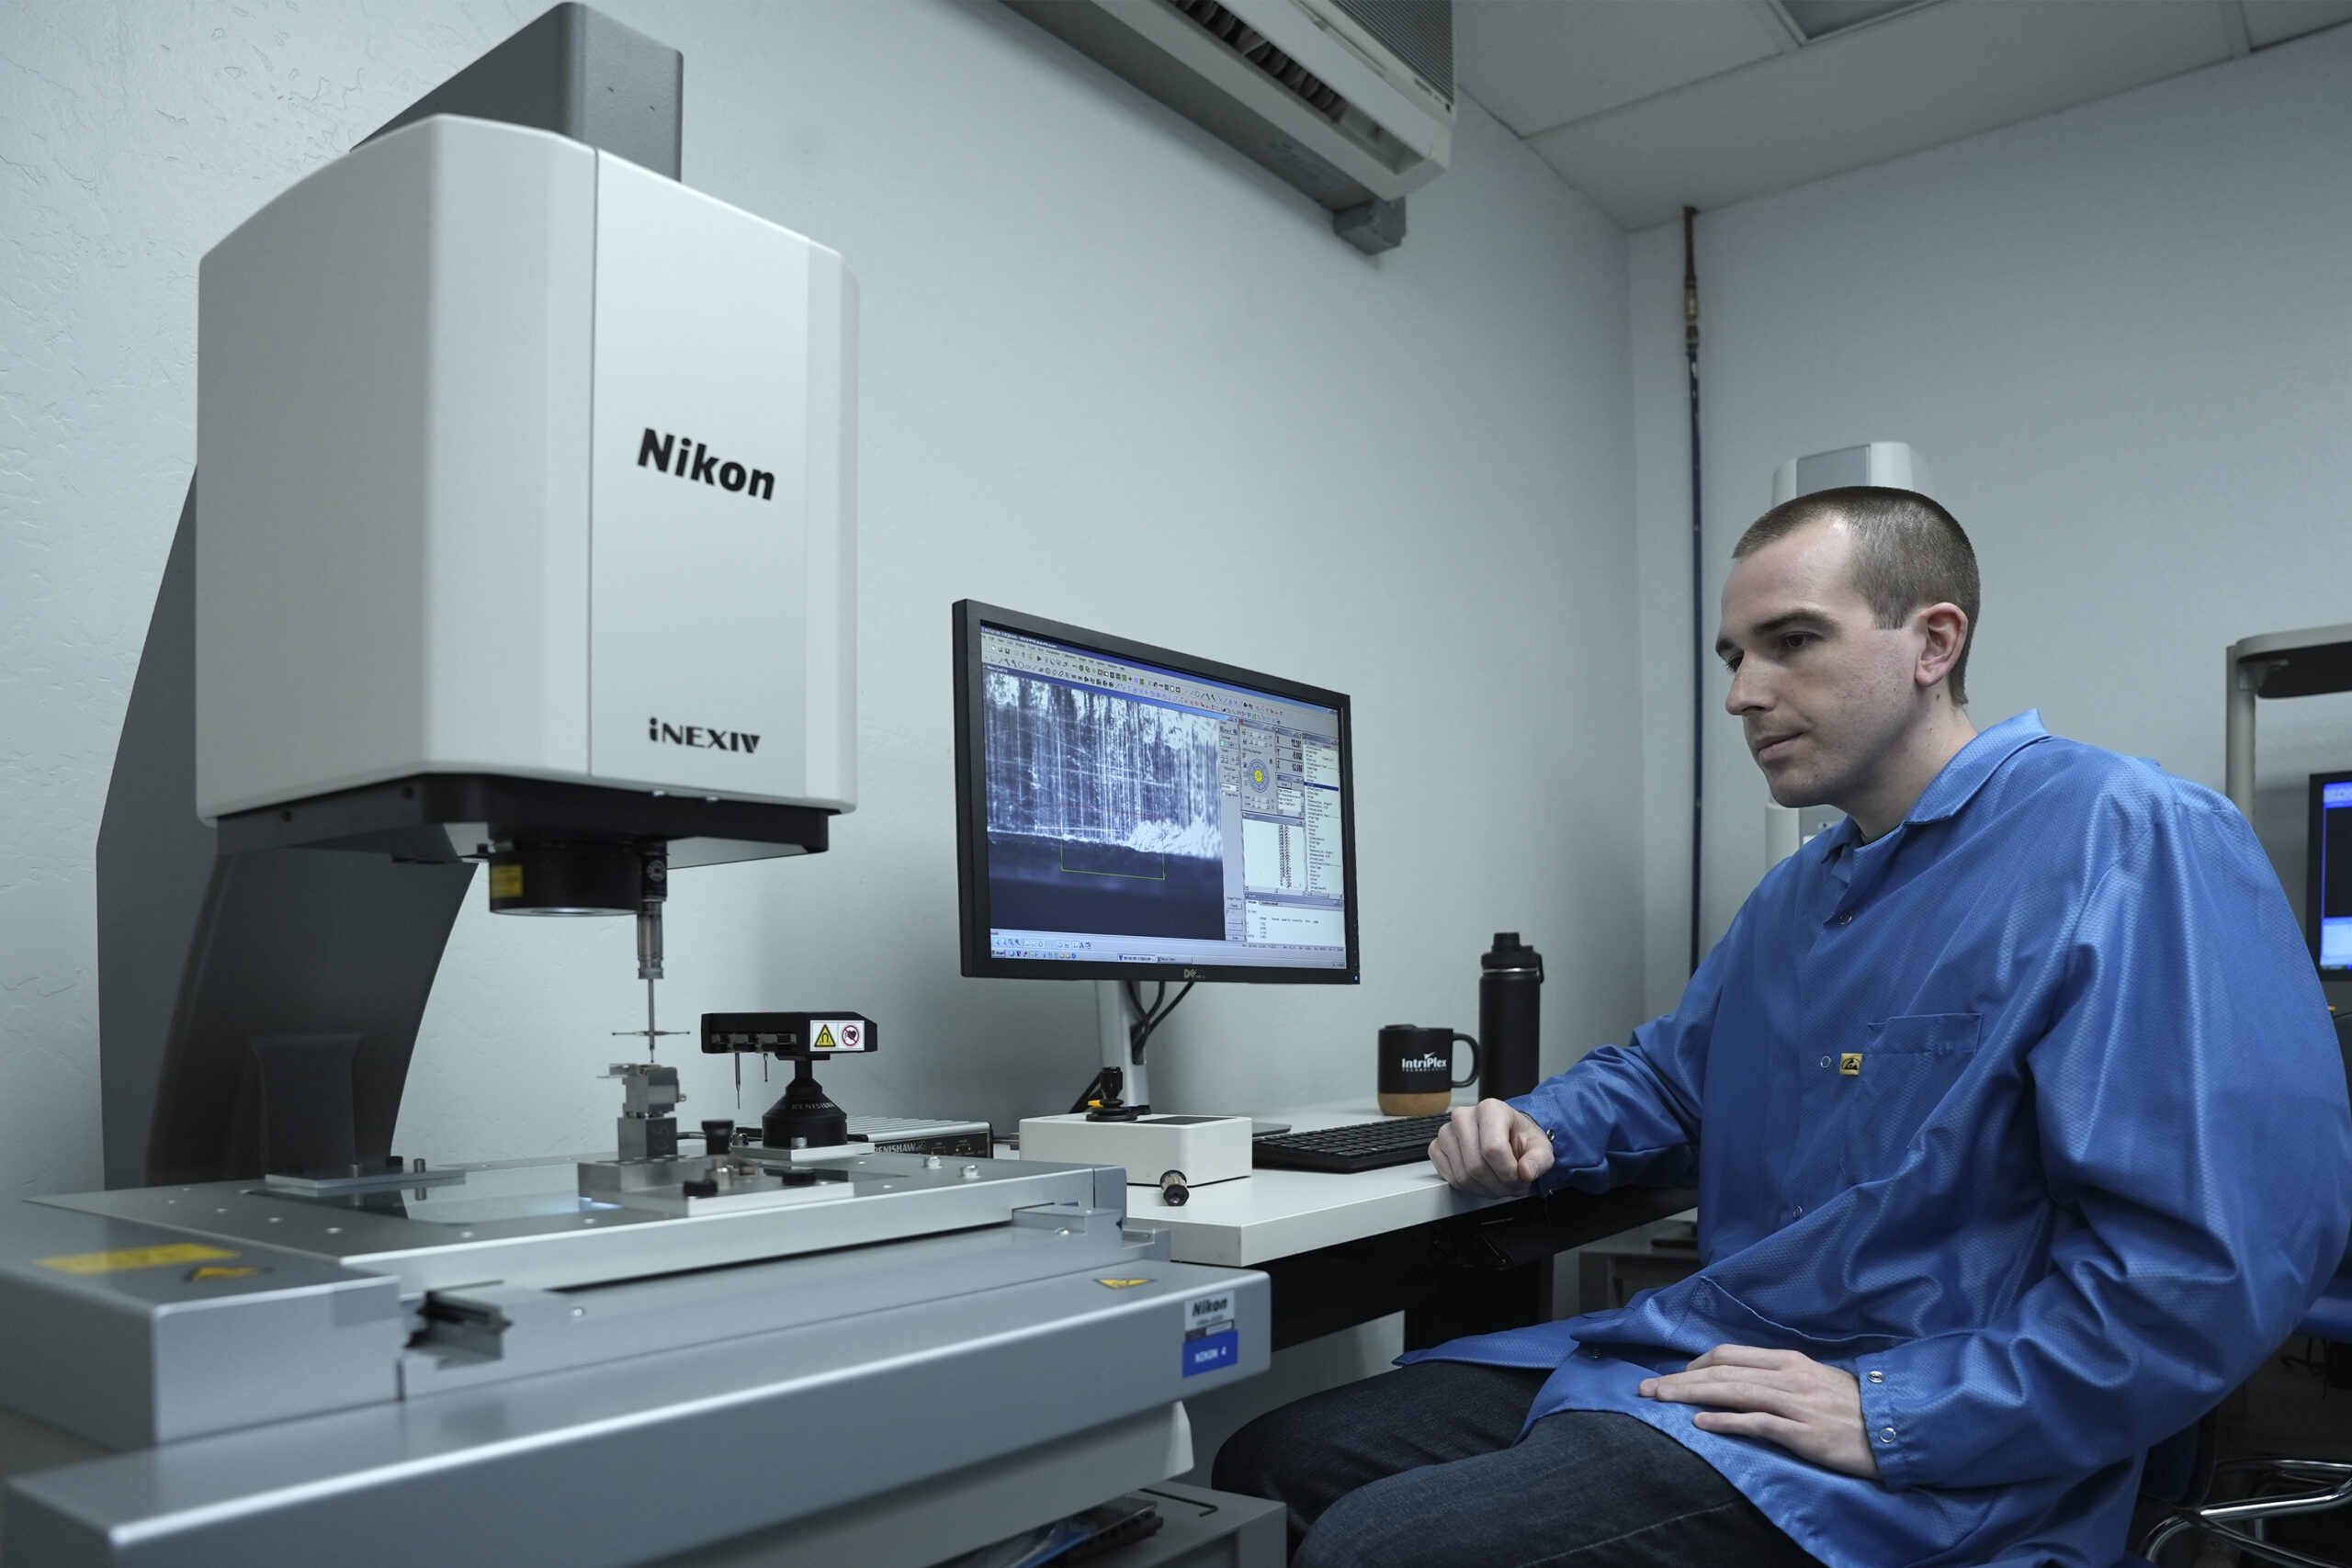 Técnico de IntriPlex en un laboratorio observando el sistema de medición por video que realiza una inspección de precisión.